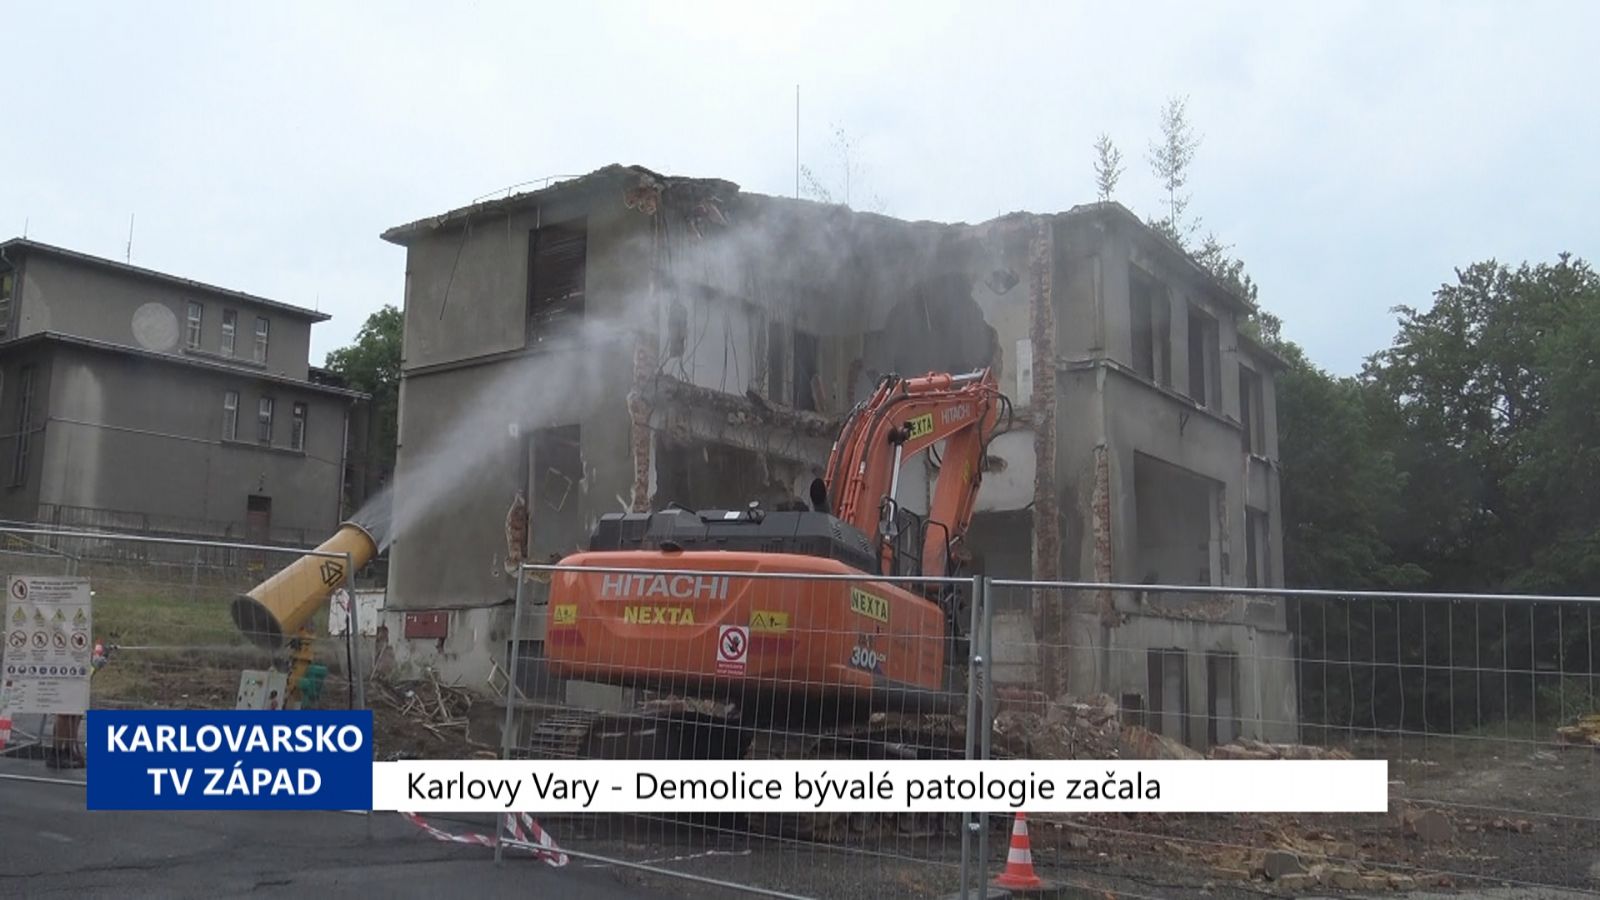 Karlovy Vary: Demolice bývalé patologie začala (TV Západ)